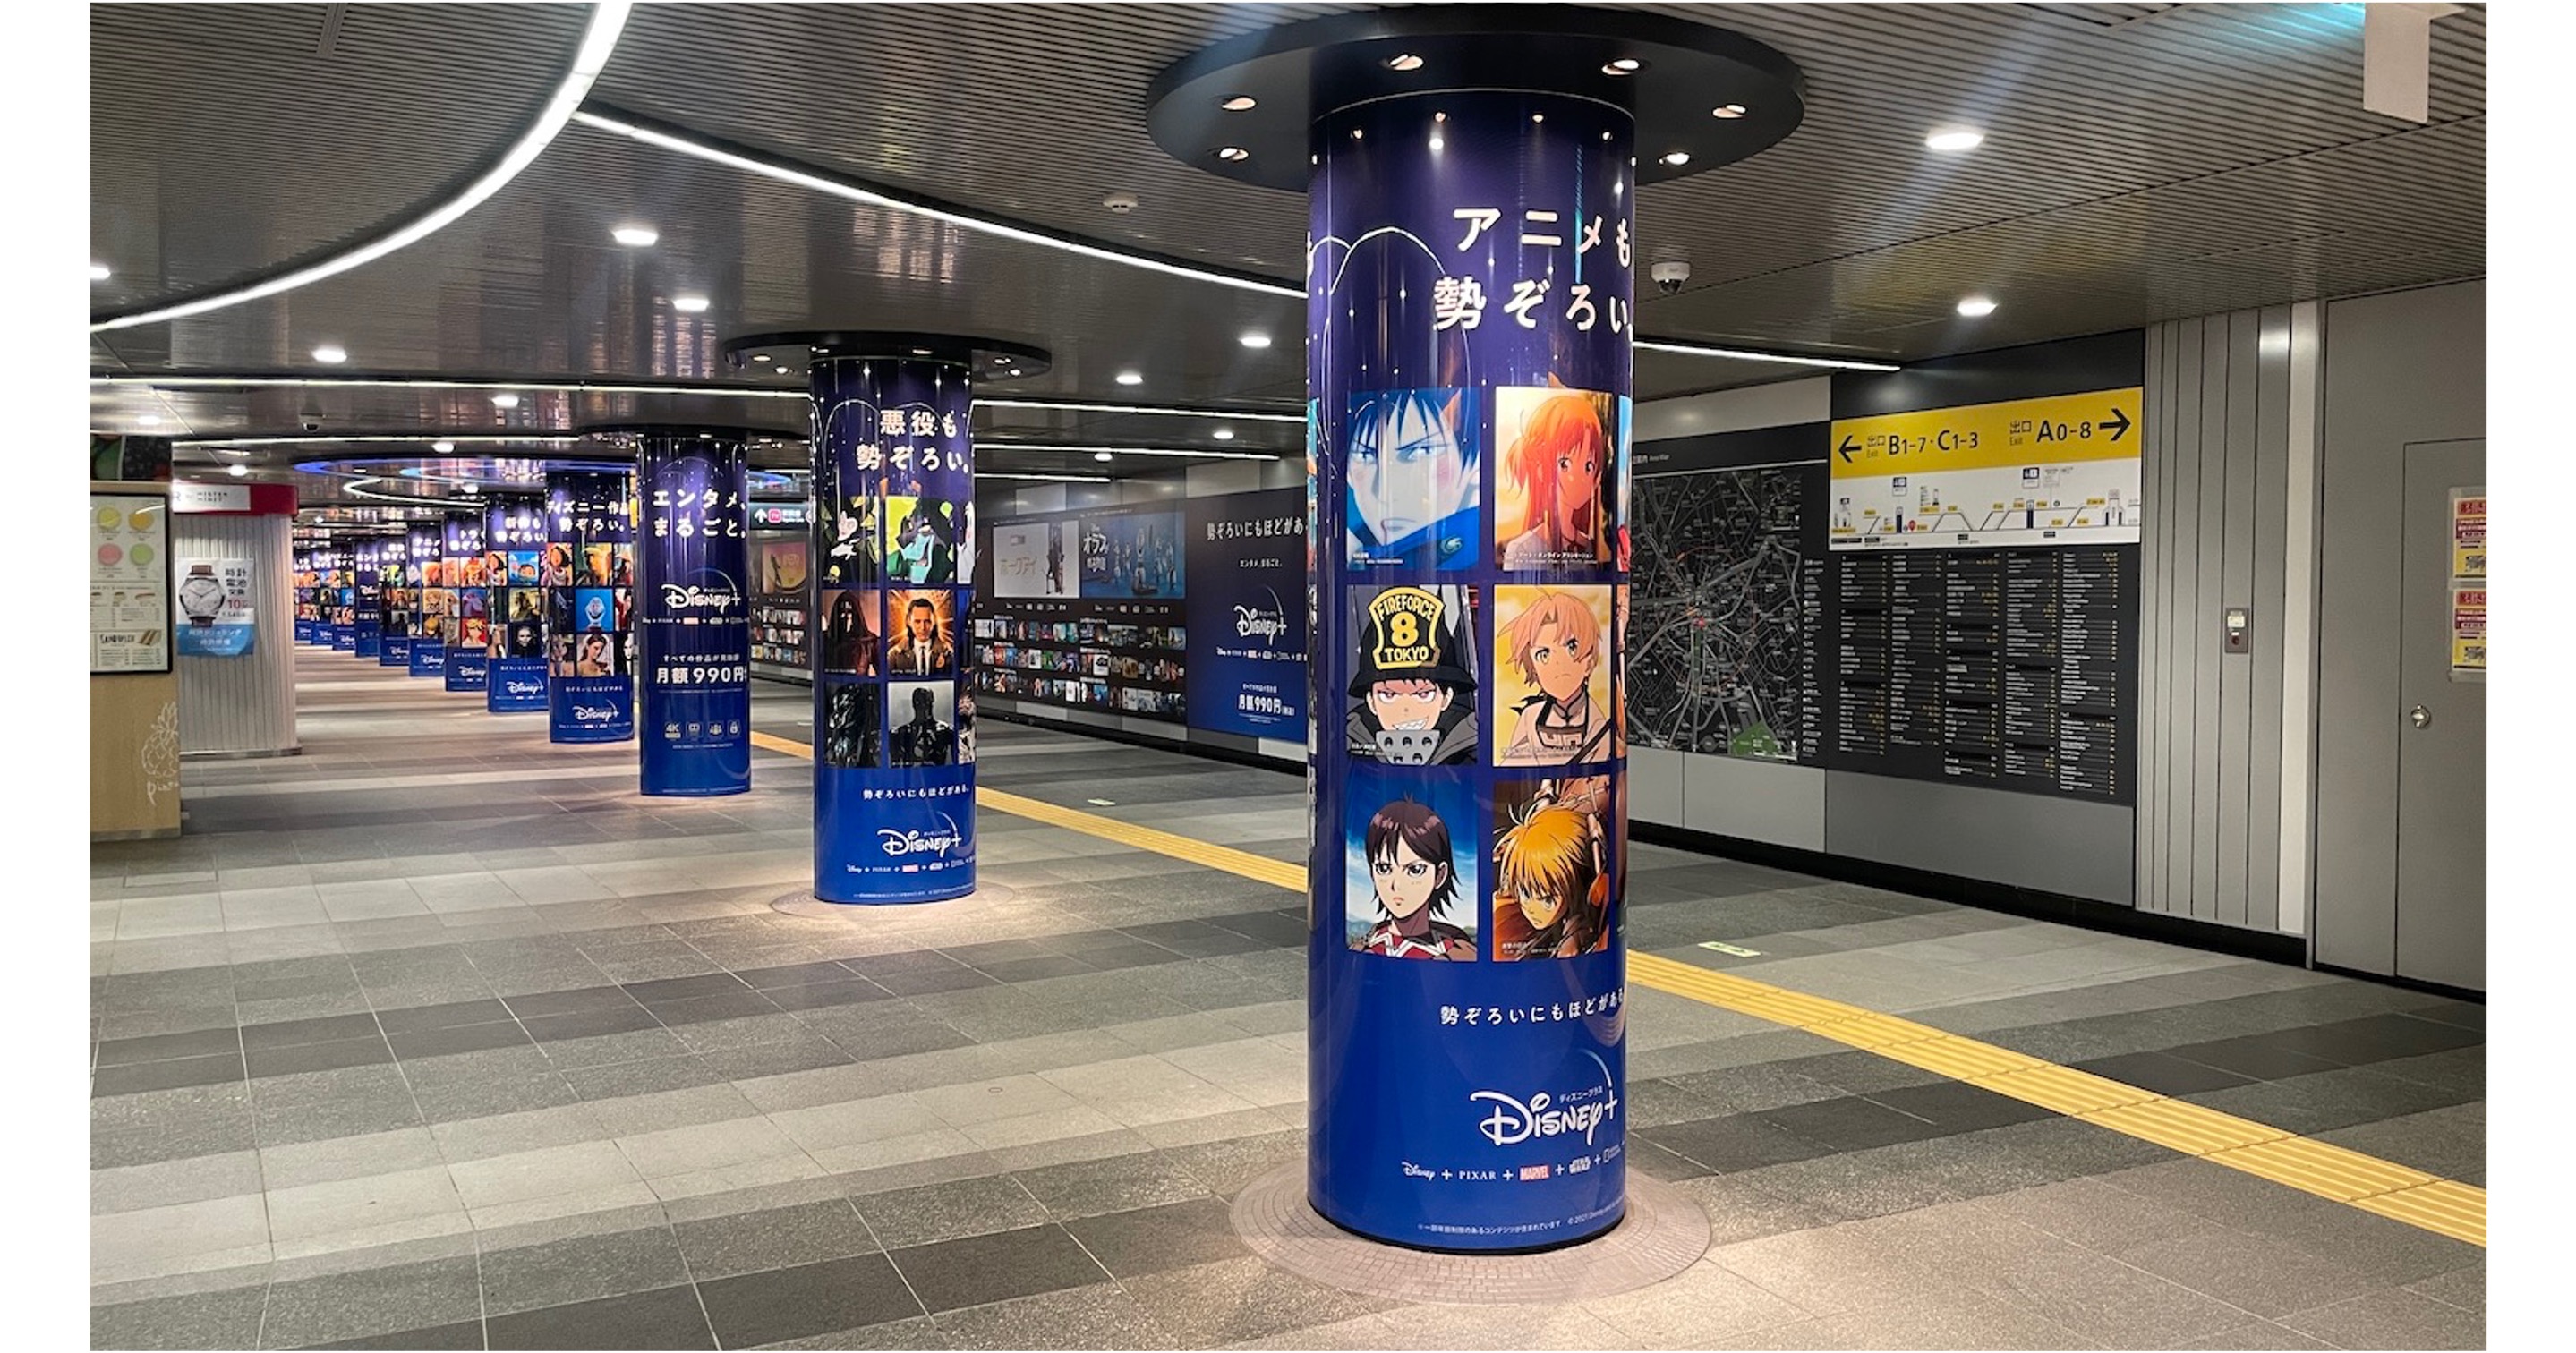 ディズニープラス 年末年始に渋谷駅の交通広告をジャック Space Media 全国のoohメディアと最新oohニュースの総合情報サイト